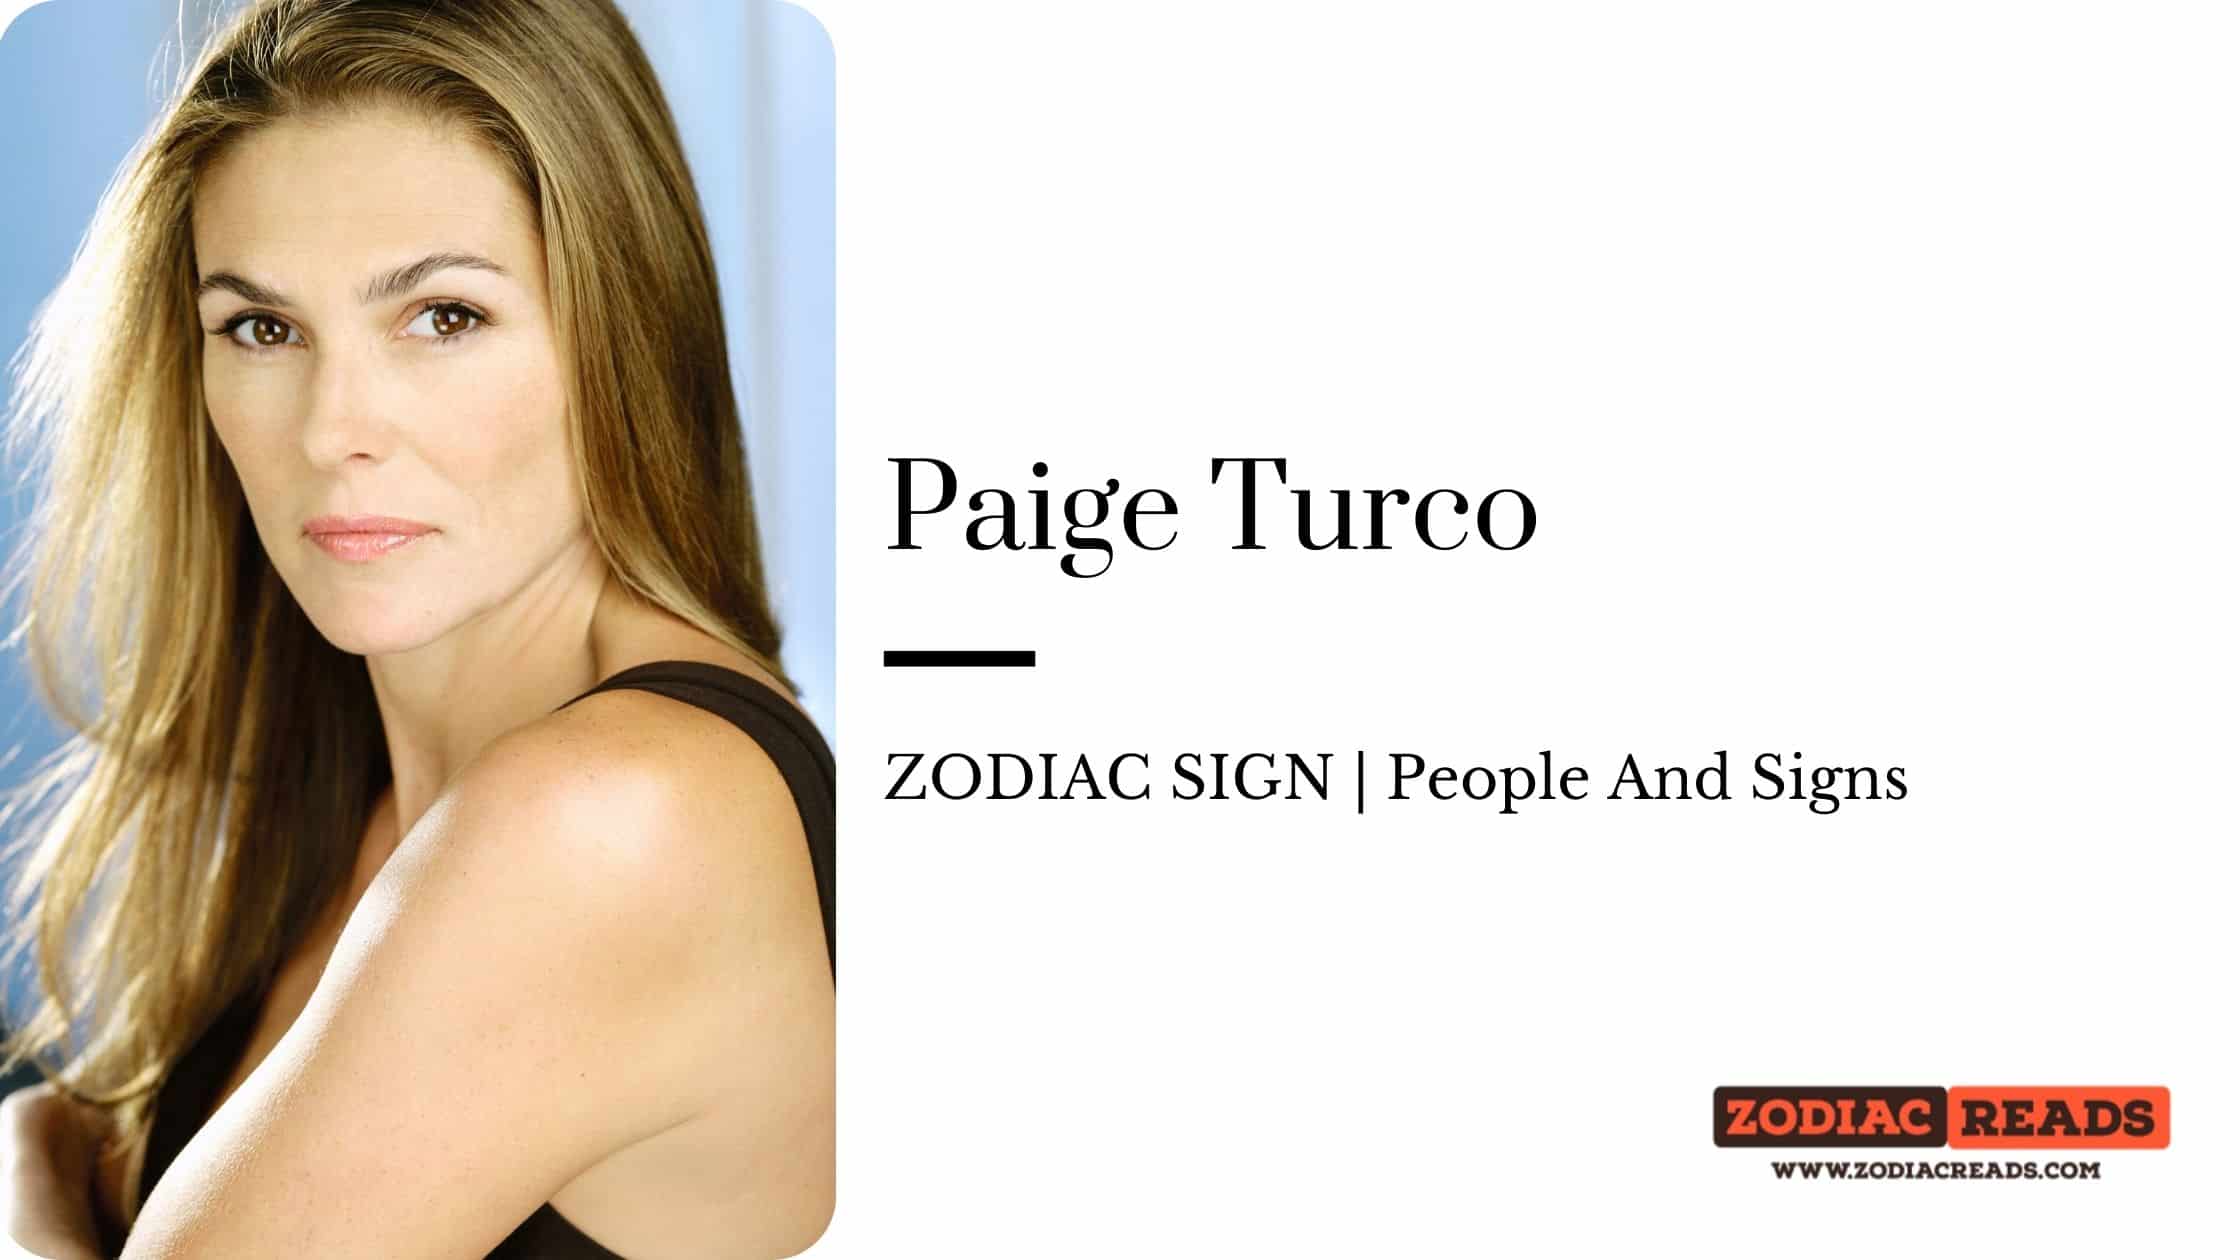 Paige Turco zodiac